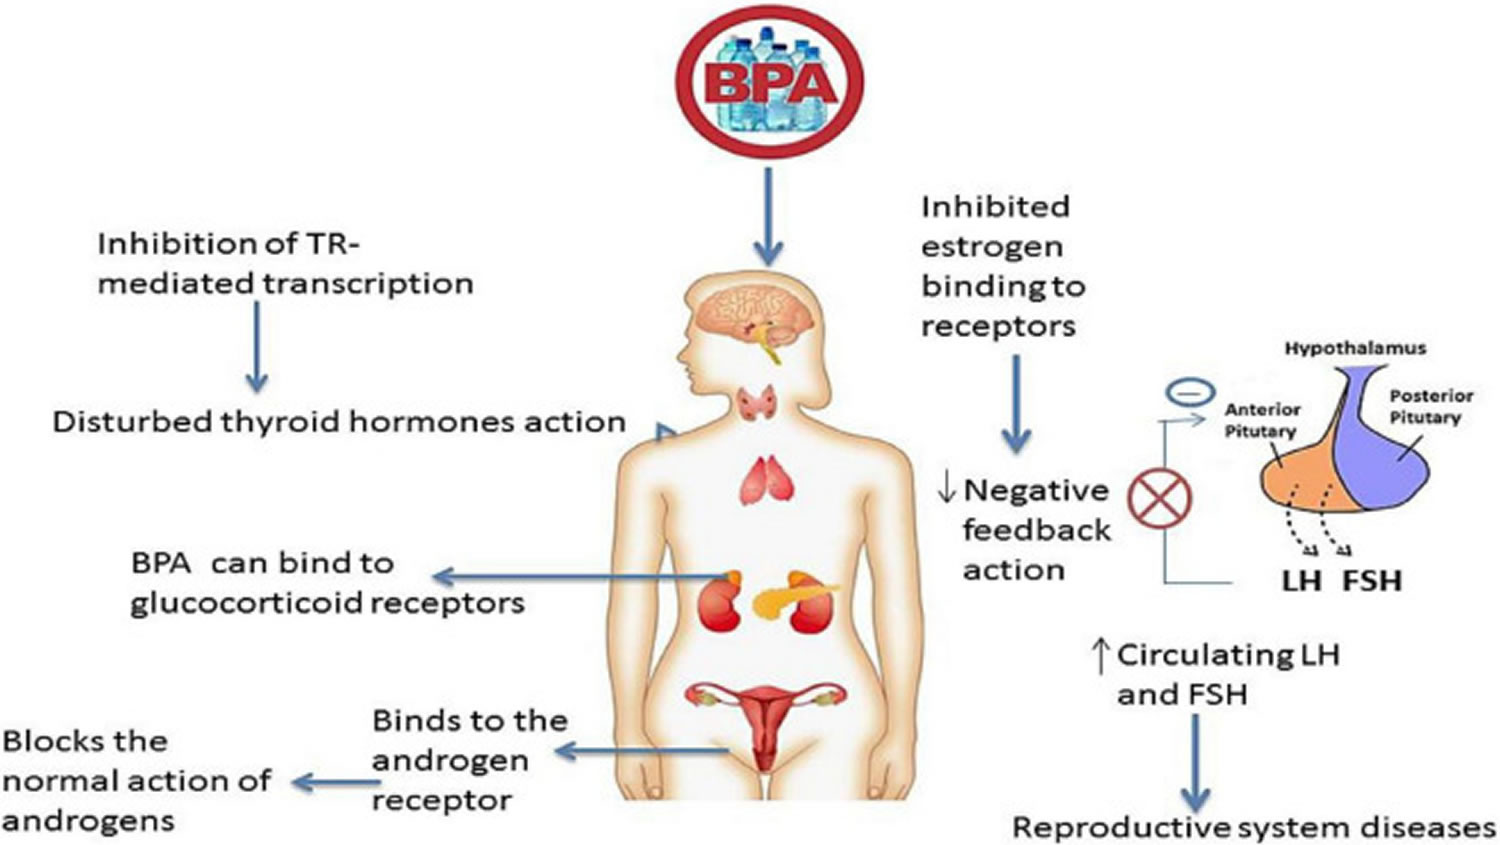 Bisphenol A is an endocrine disruptor